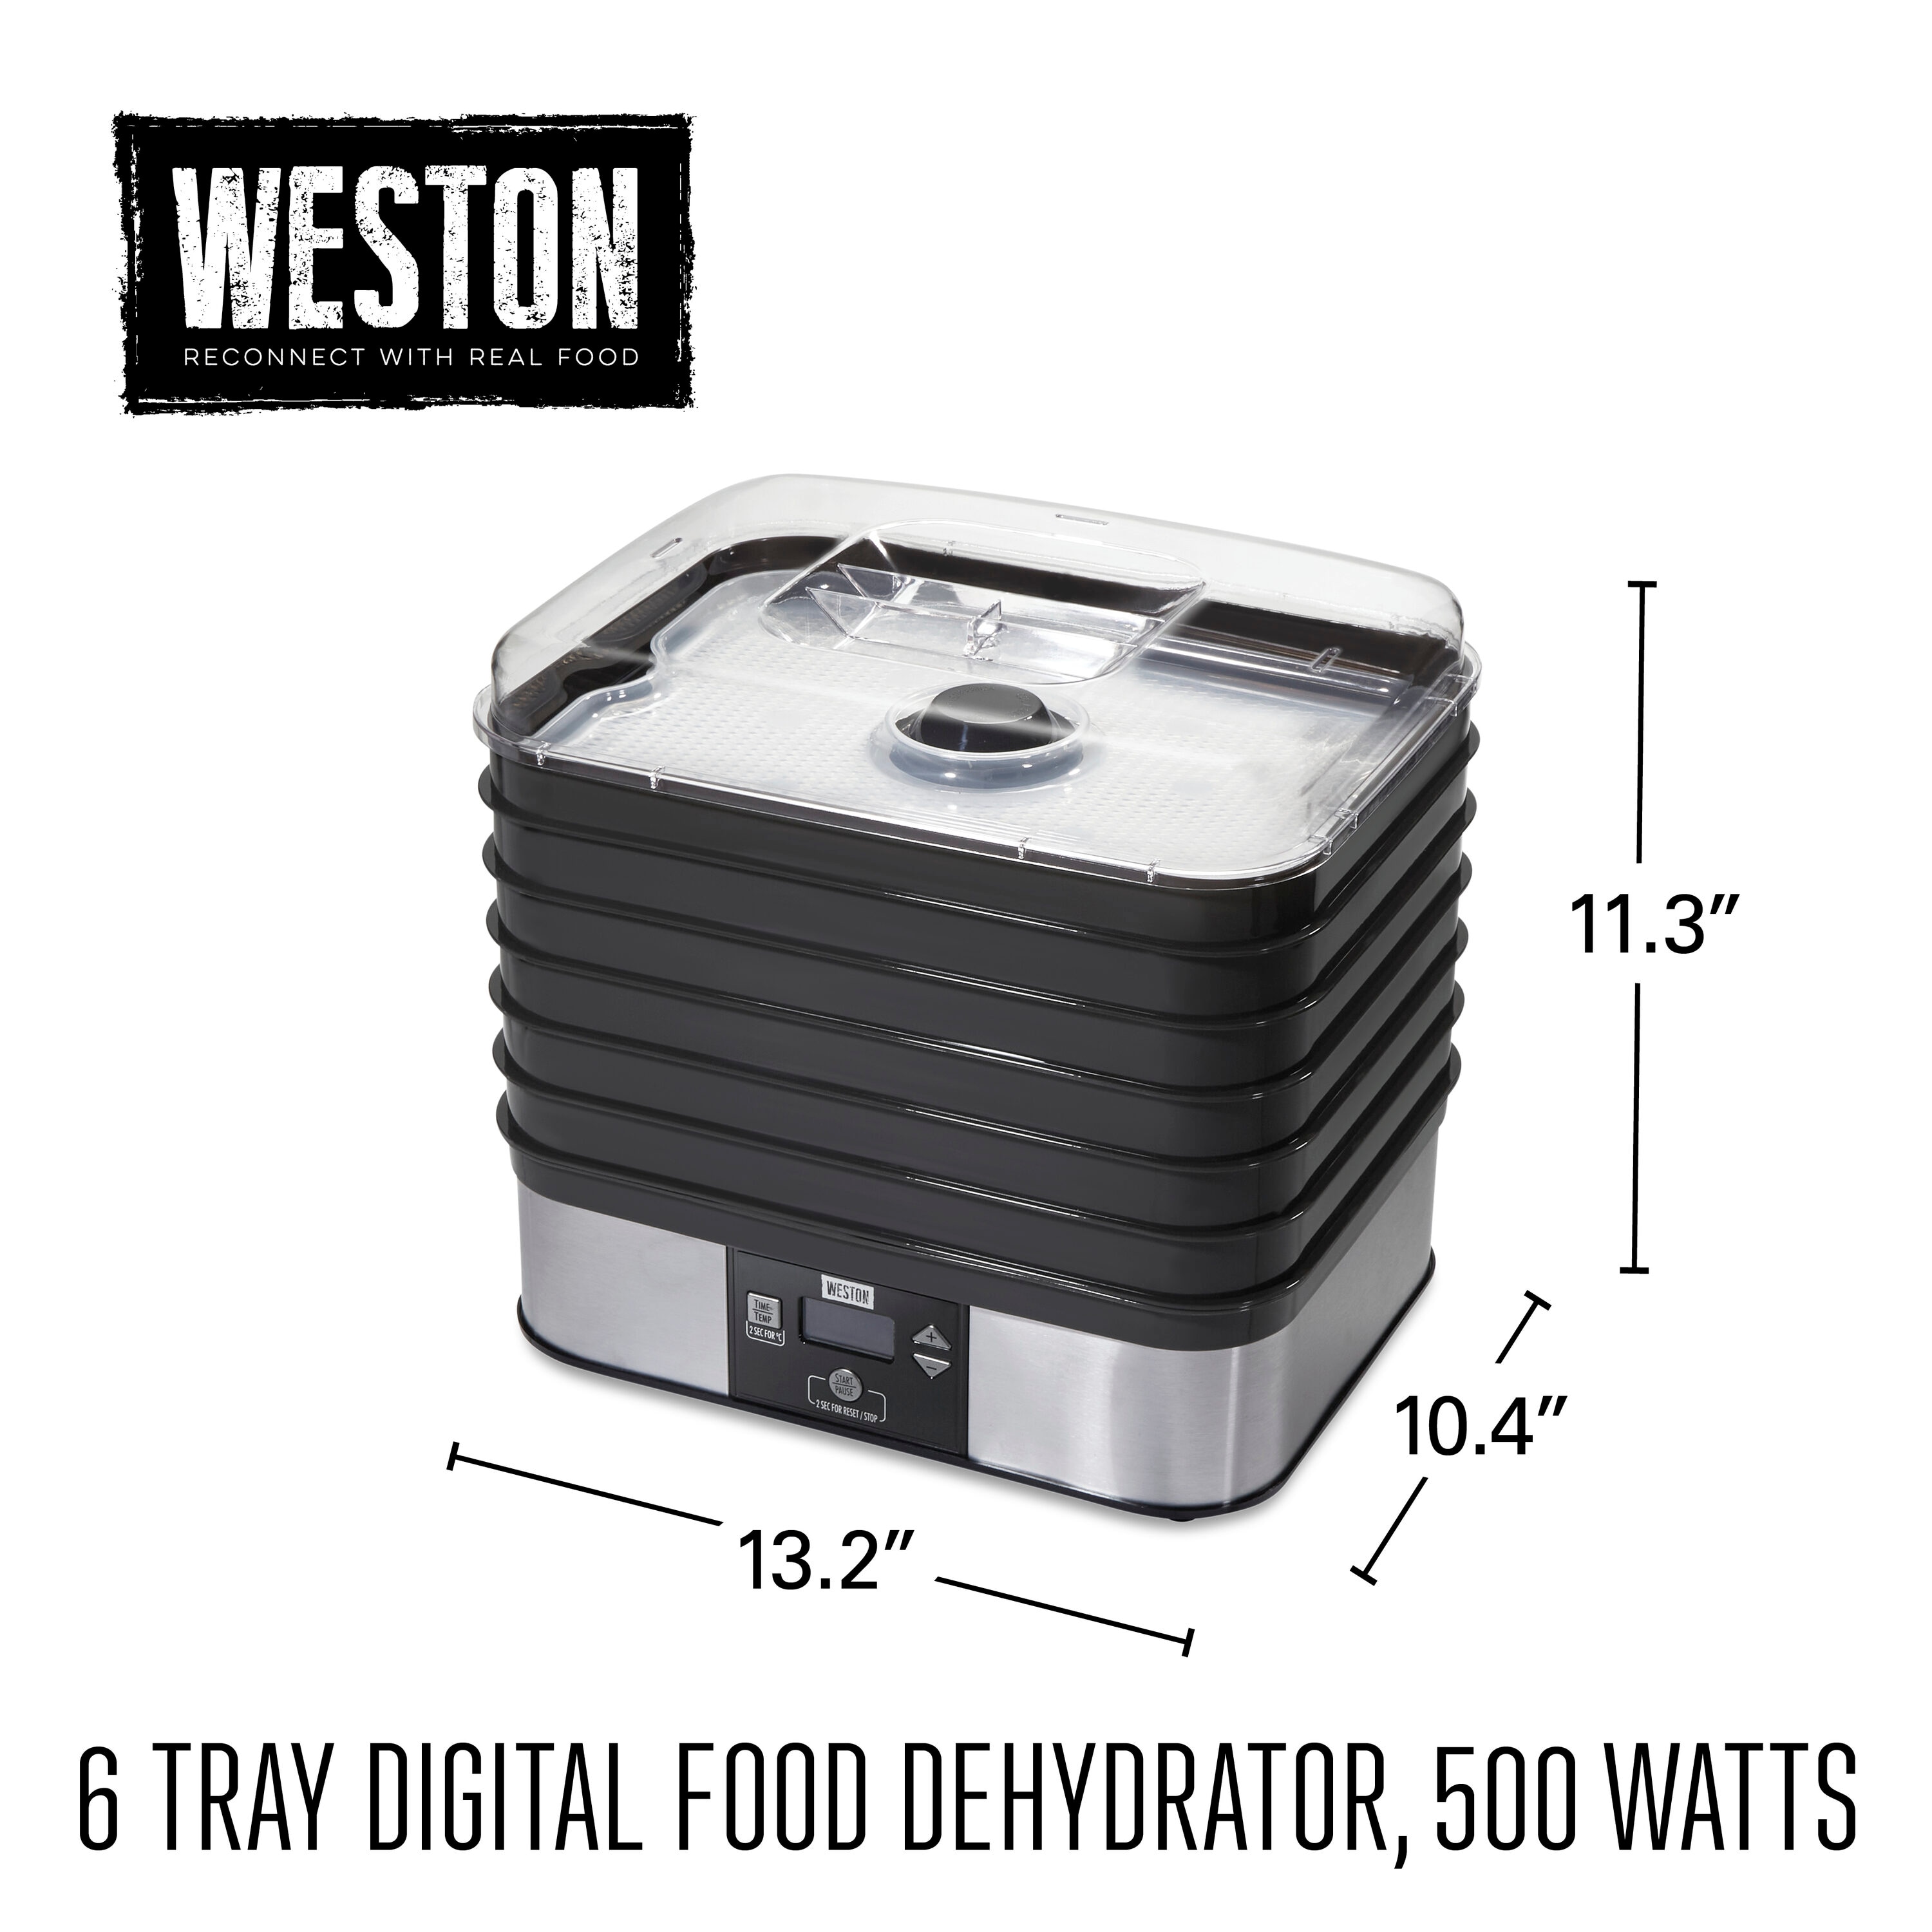 Hamilton Beach Food Dehydrator, 500 Watts, 5 trays, Silver, 32100A